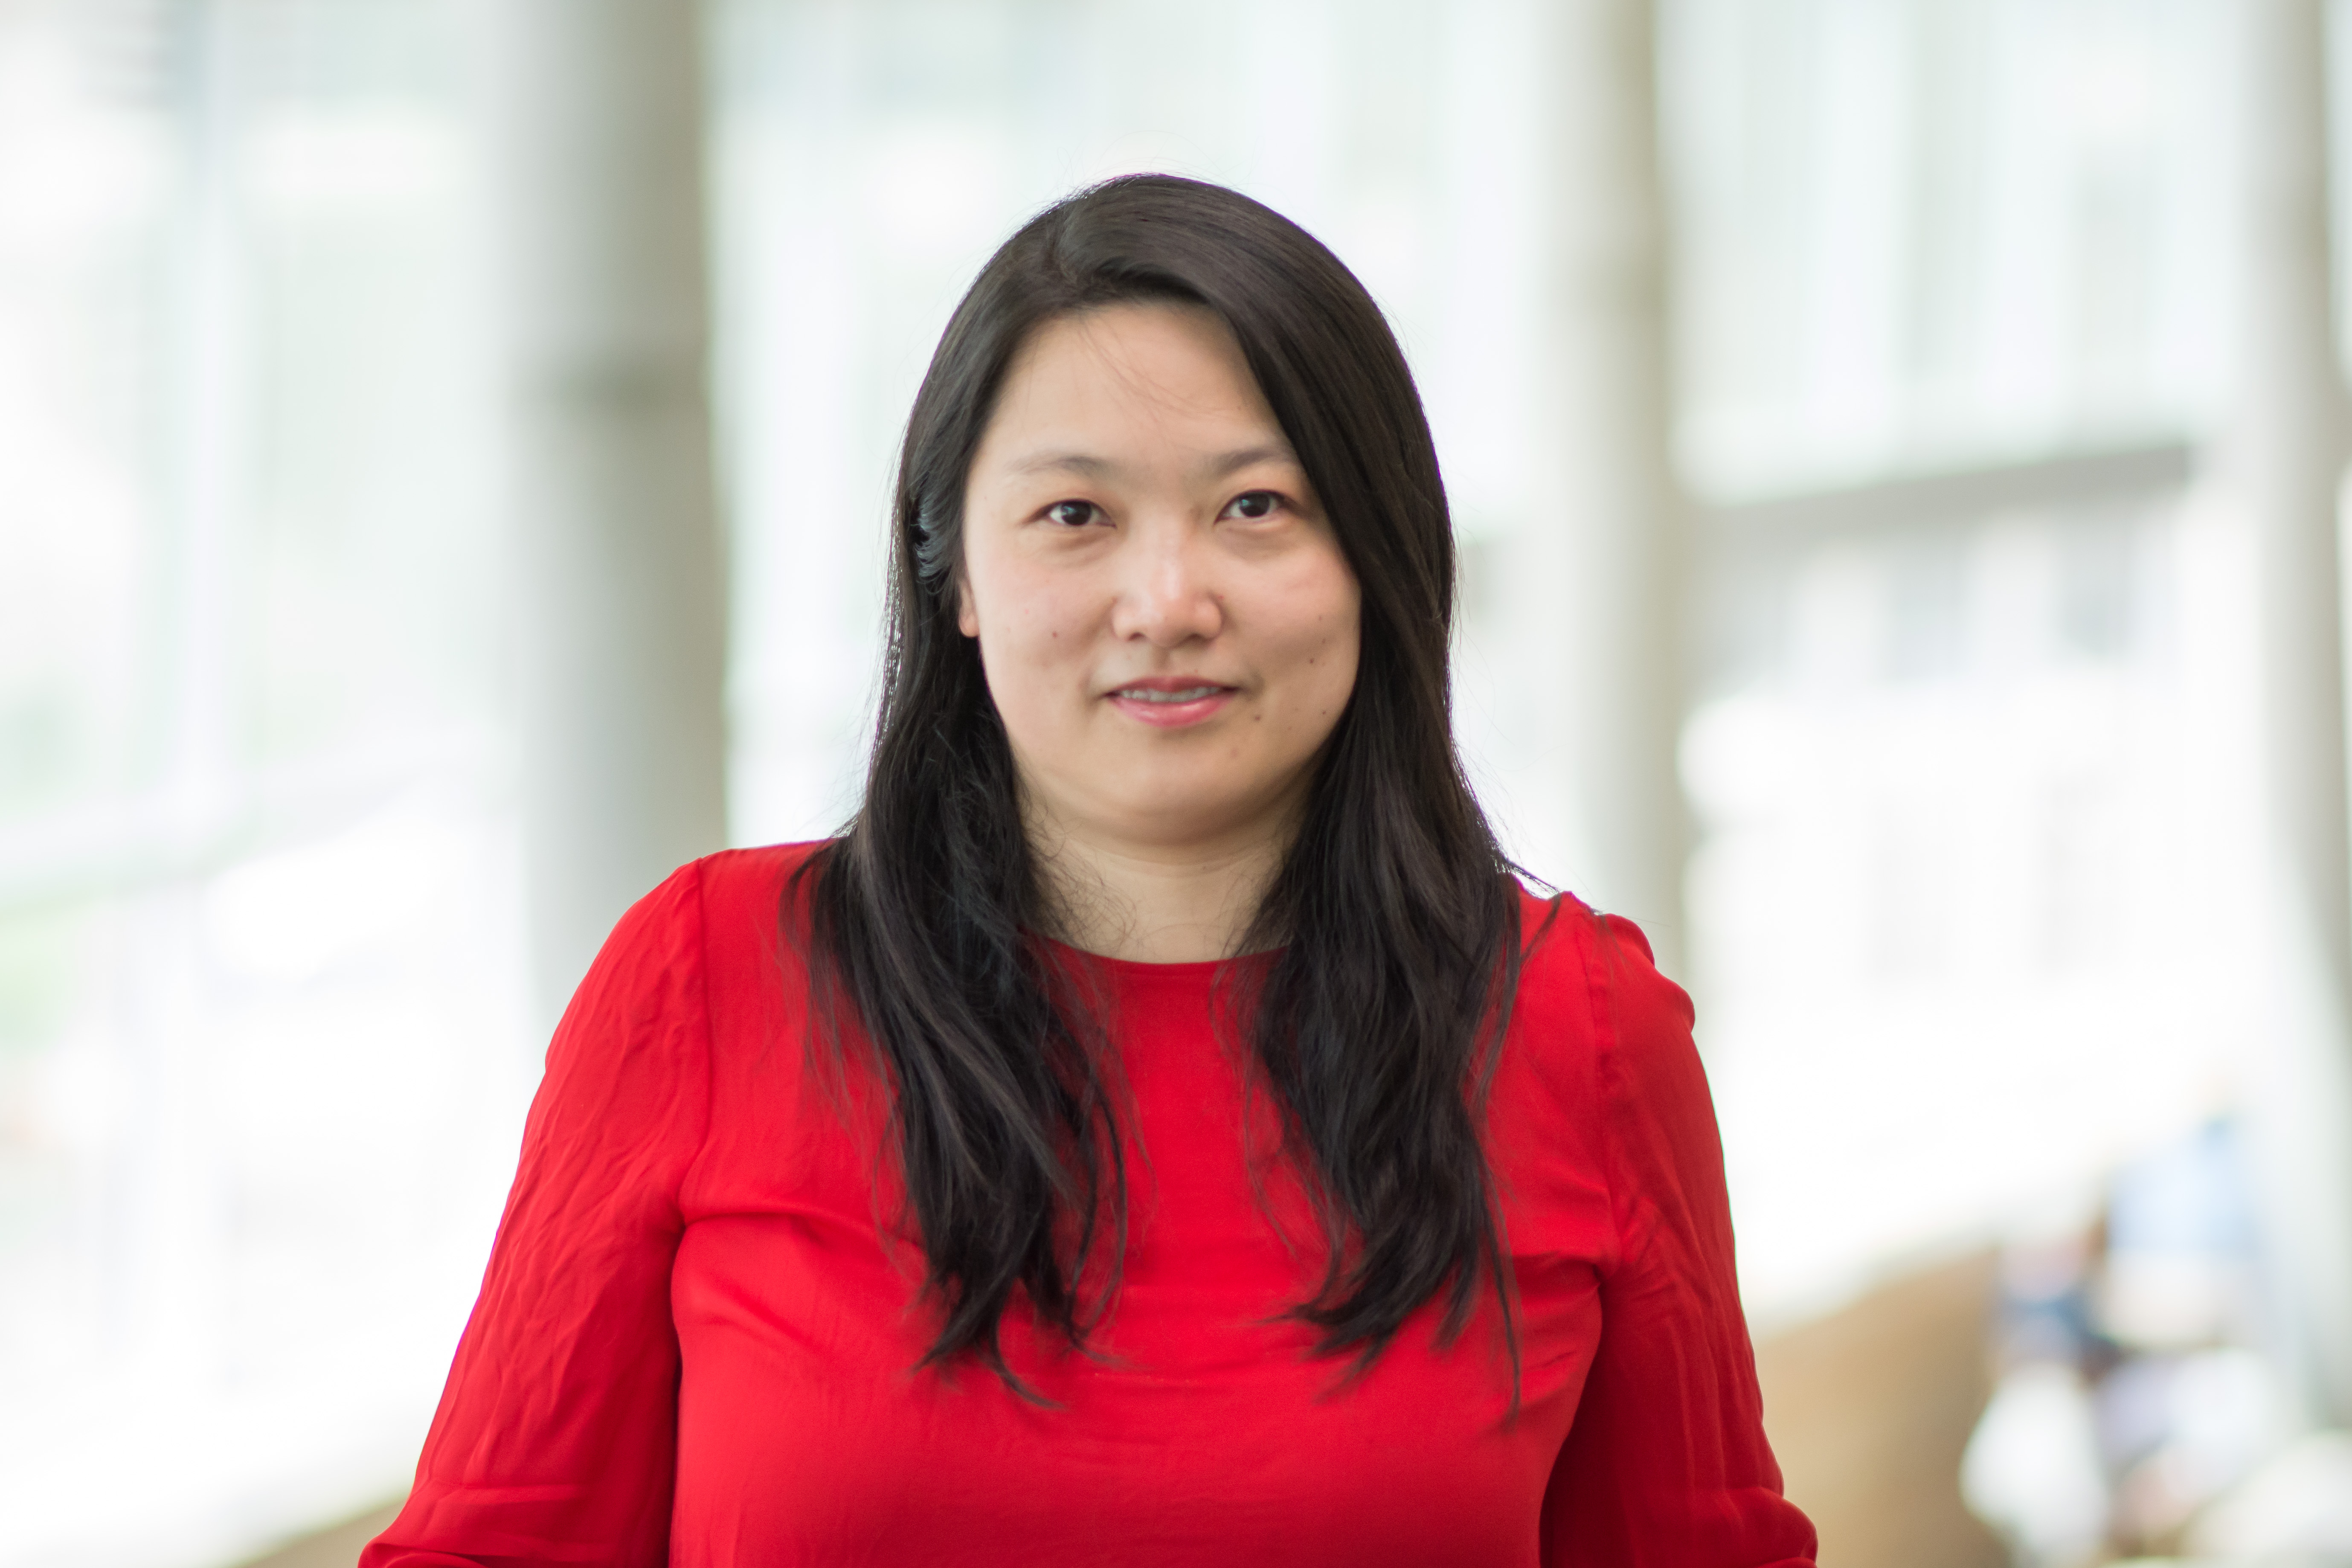 Zenghan “Hannah” Tong, PhD